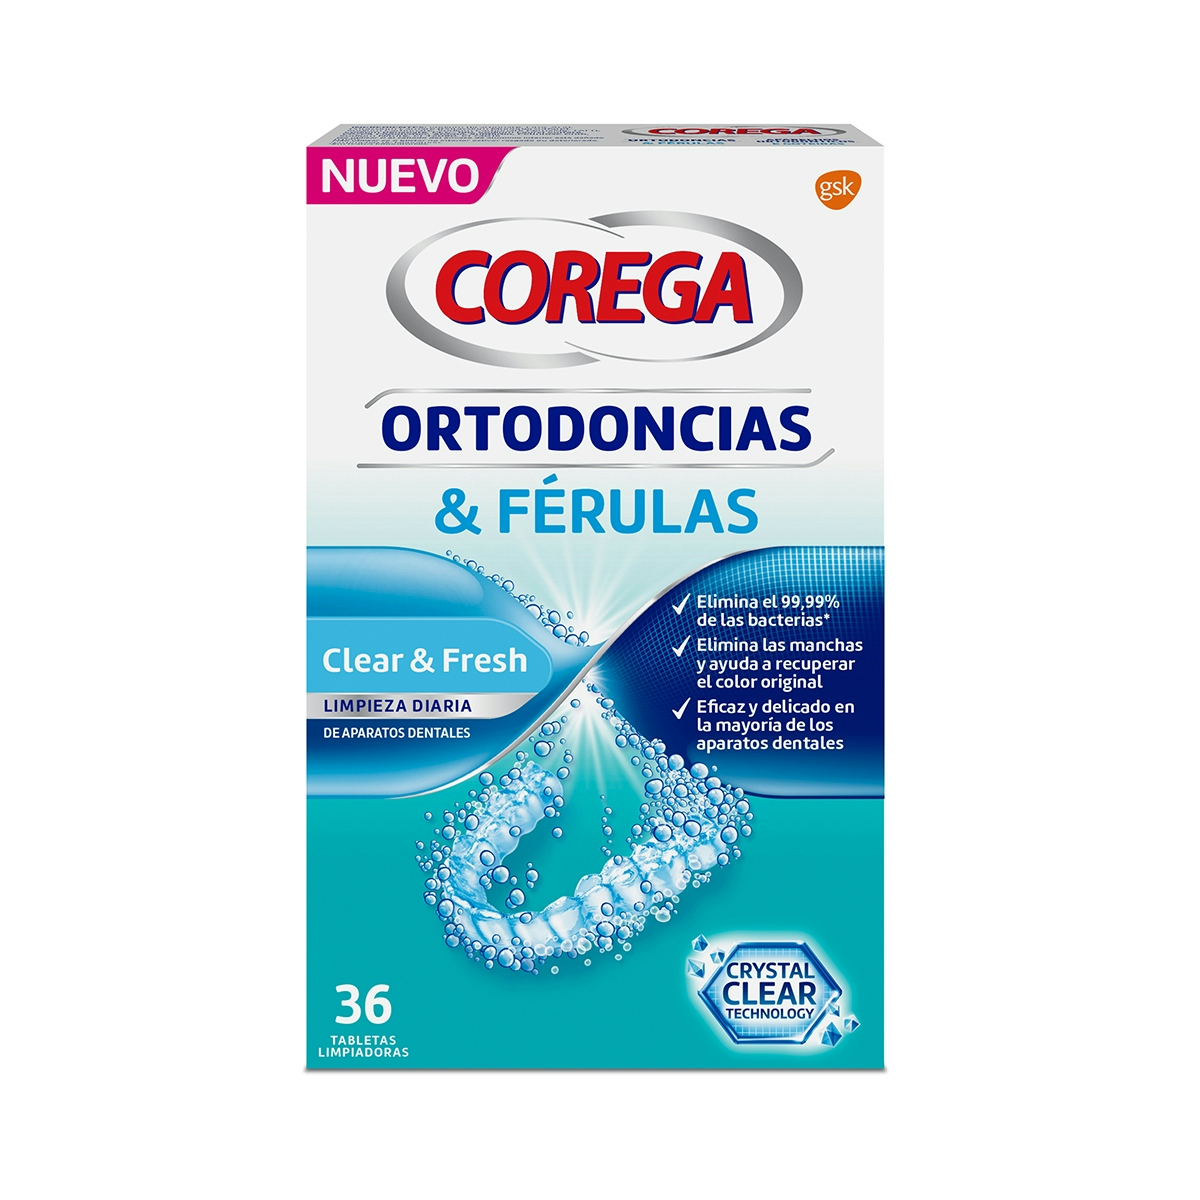 Tabletas limpiadoras Clear&Fresch para ortodoncia y férulas Corega 36 uds